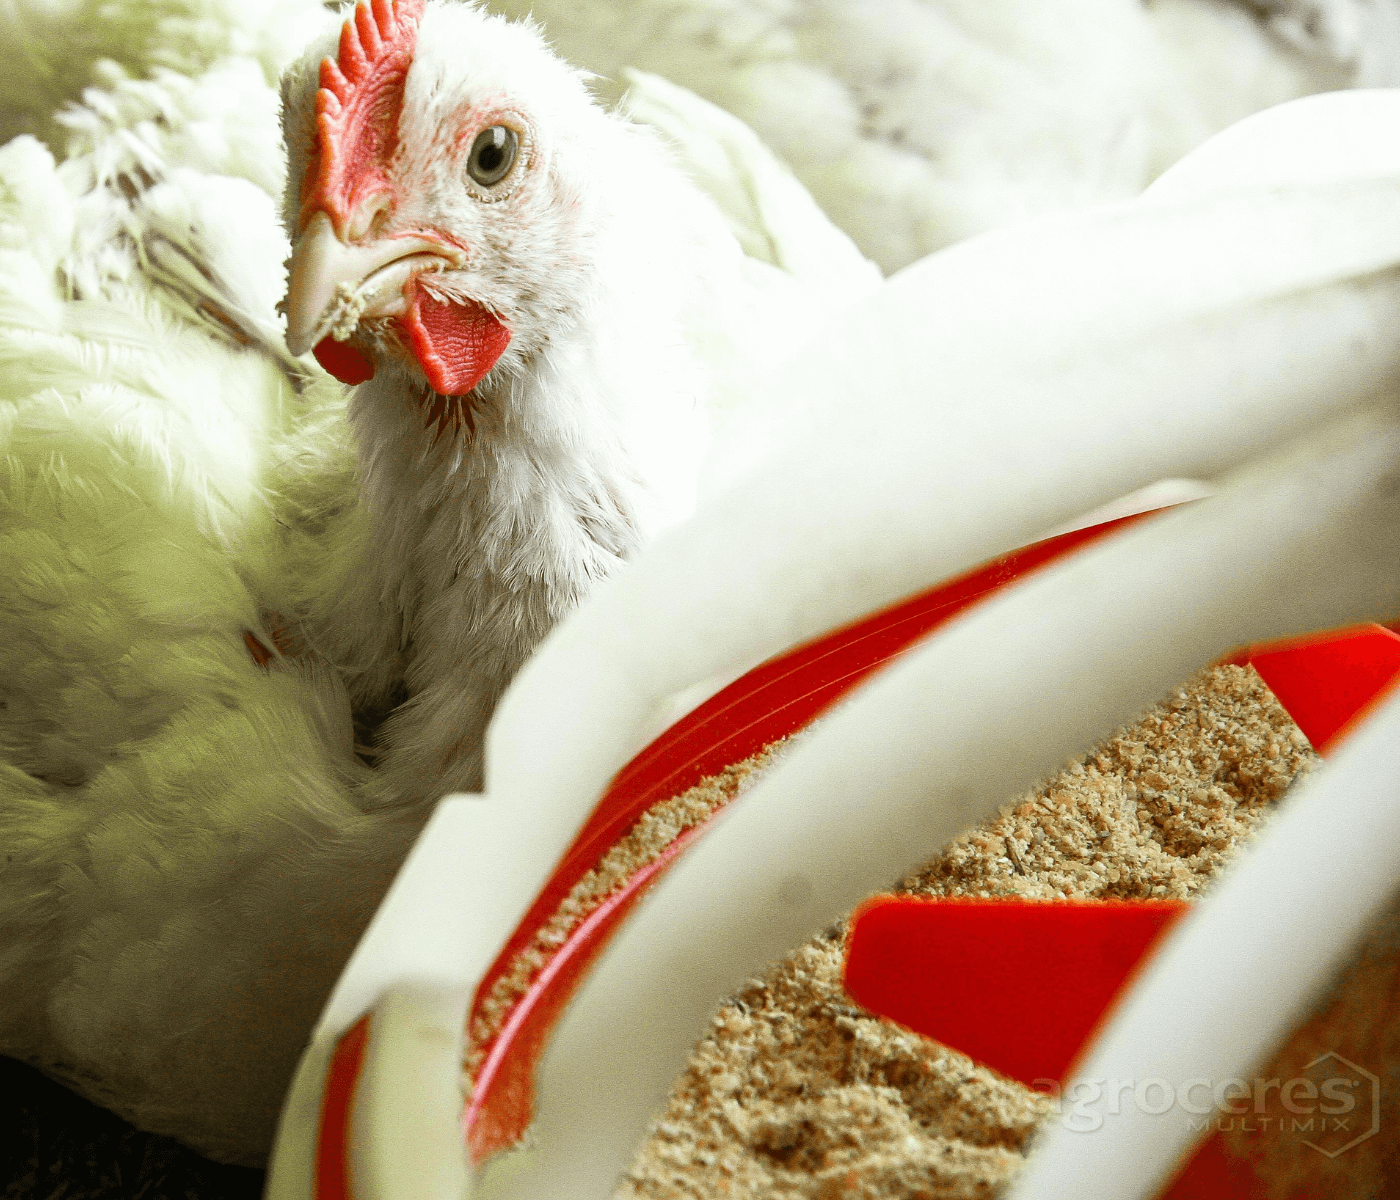 Substituição a antibióticos na produção avícola exige eficácia na combinação de aditivos